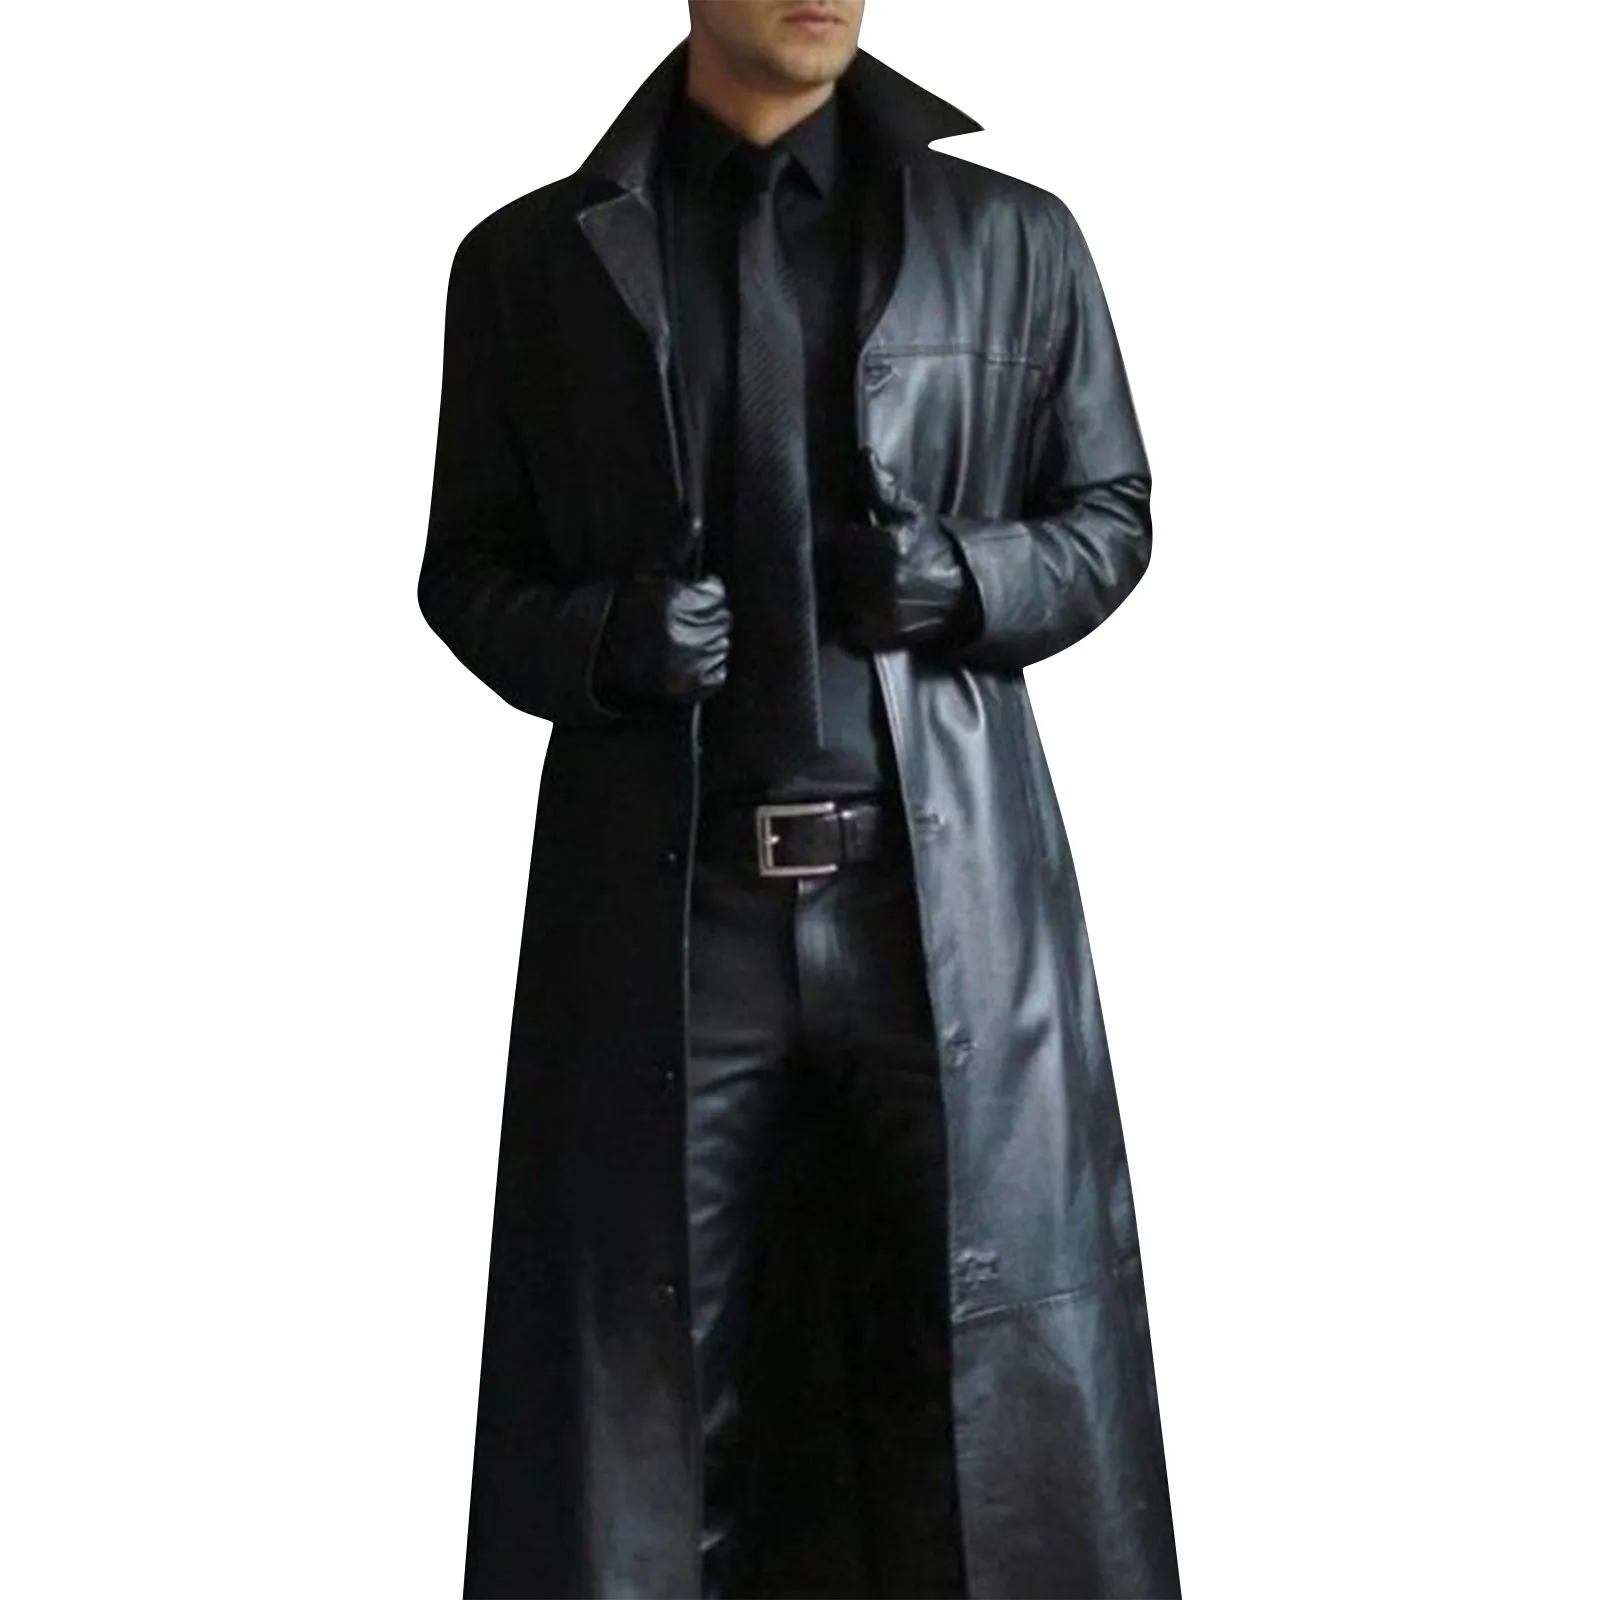 Tanie Skórzany trencz nowy płaszcz typu Trench płaszcze mężczyźni Jaqueta Masculina mężczyźni płaszcz sklep